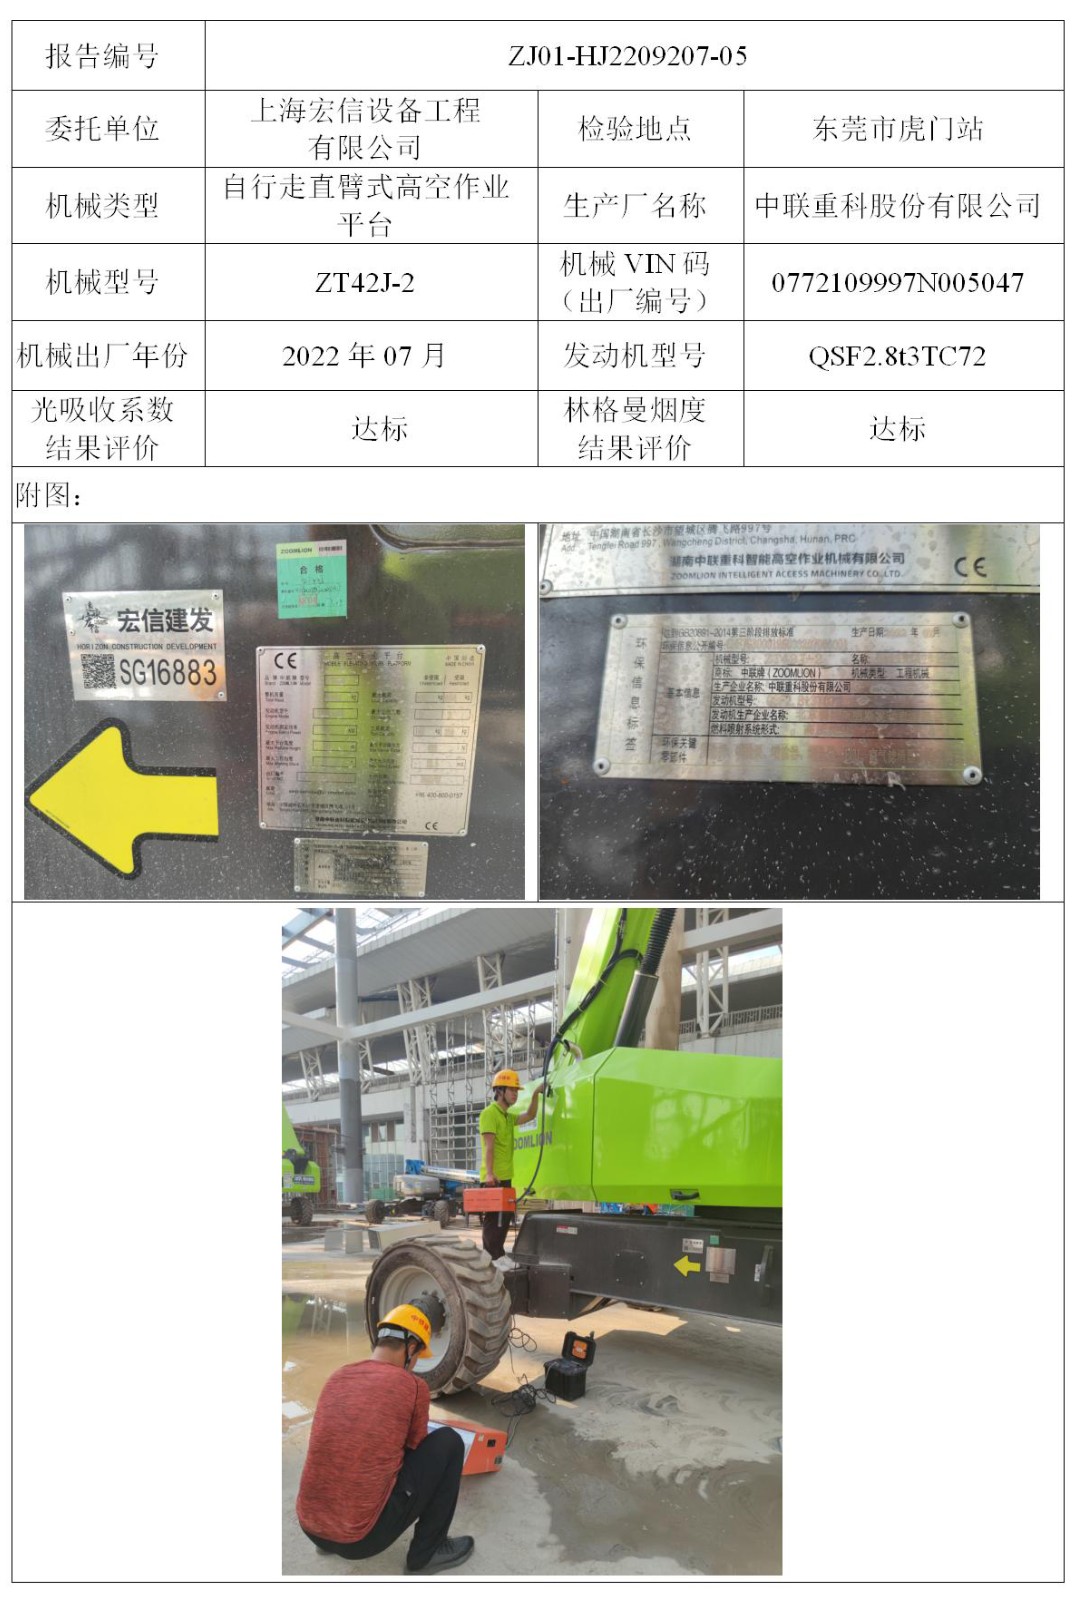 委托-ZJ01-HJ2209207-05上海宏信设备工程有限公司（叉车废气）二维码-张伟仪_01.jpg